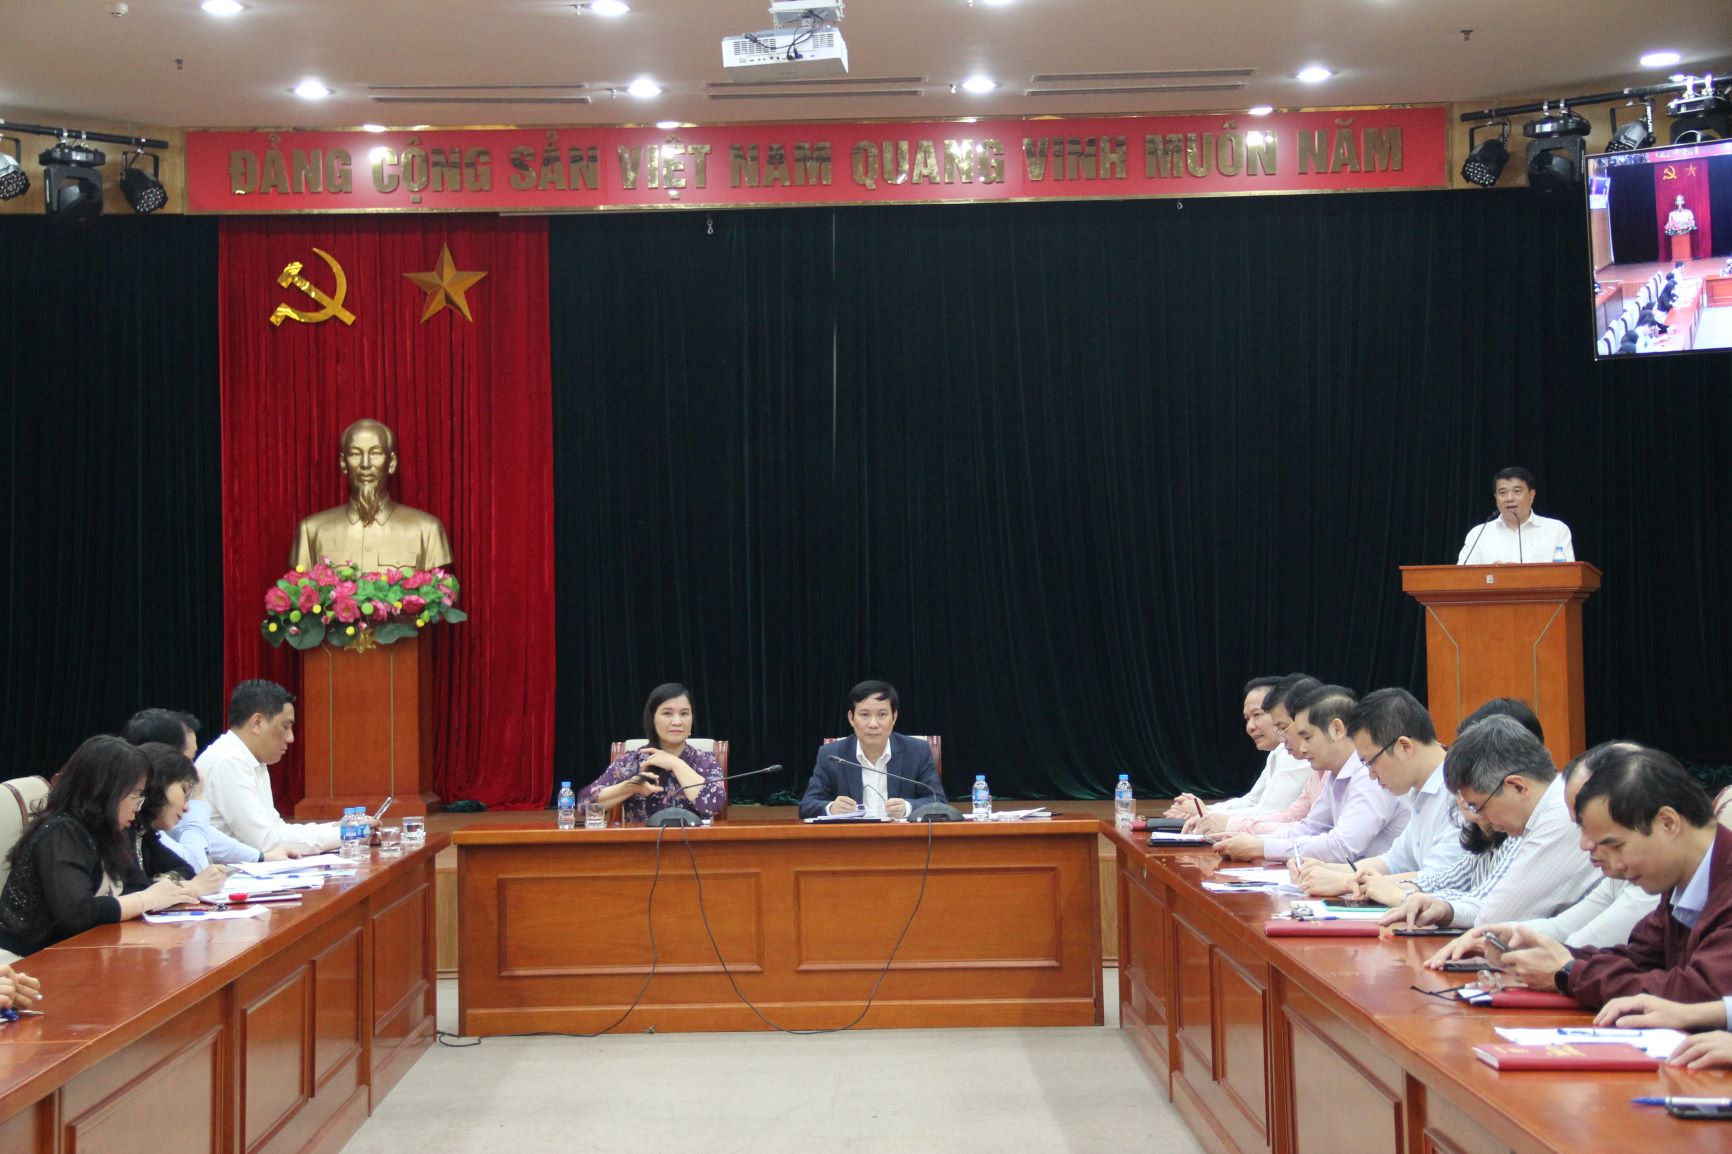 Đồng chí Y Thanh Hà Niê Kđăm, Ủy viên BCHTW Đảng, Bí thư Đảng ủy Khối Doanh nghiệp Trung ương phát biểu tại Hội nghị lấy ý kiến của cử tri nơi công tác.